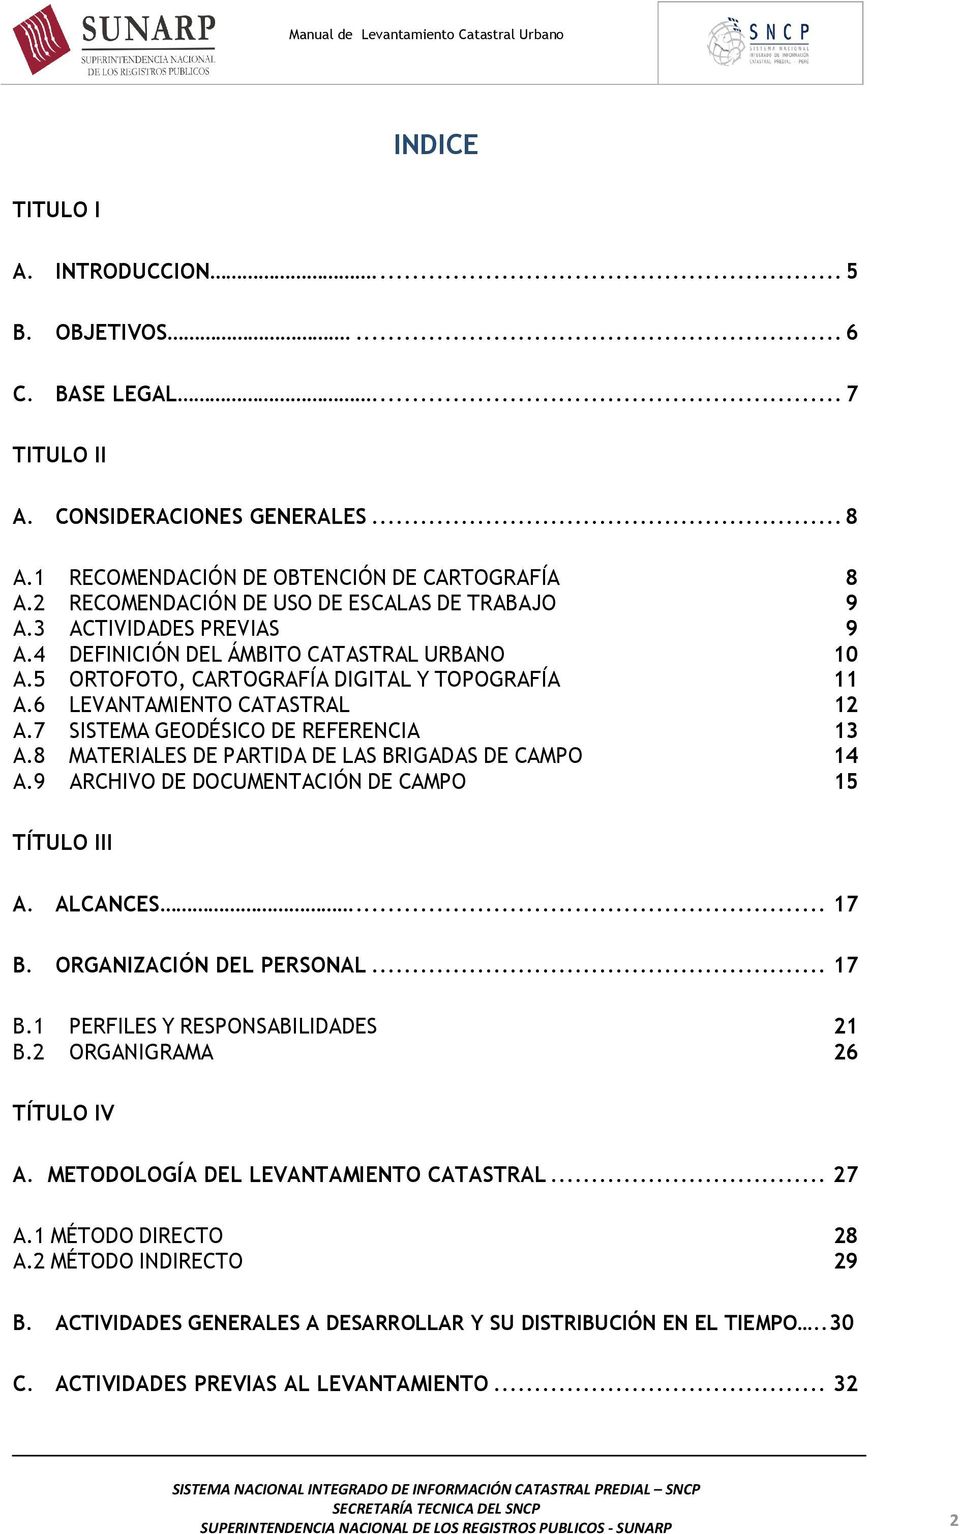 6 LEVANTAMIENTO CATASTRAL 12 A.7 SISTEMA GEODÉSICO DE REFERENCIA 13 A.8 MATERIALES DE PARTIDA DE LAS BRIGADAS DE CAMPO 14 A.9 ARCHIVO DE DOCUMENTACIÓN DE CAMPO 15 TÍTULO III A. ALCANCES... 17 B.